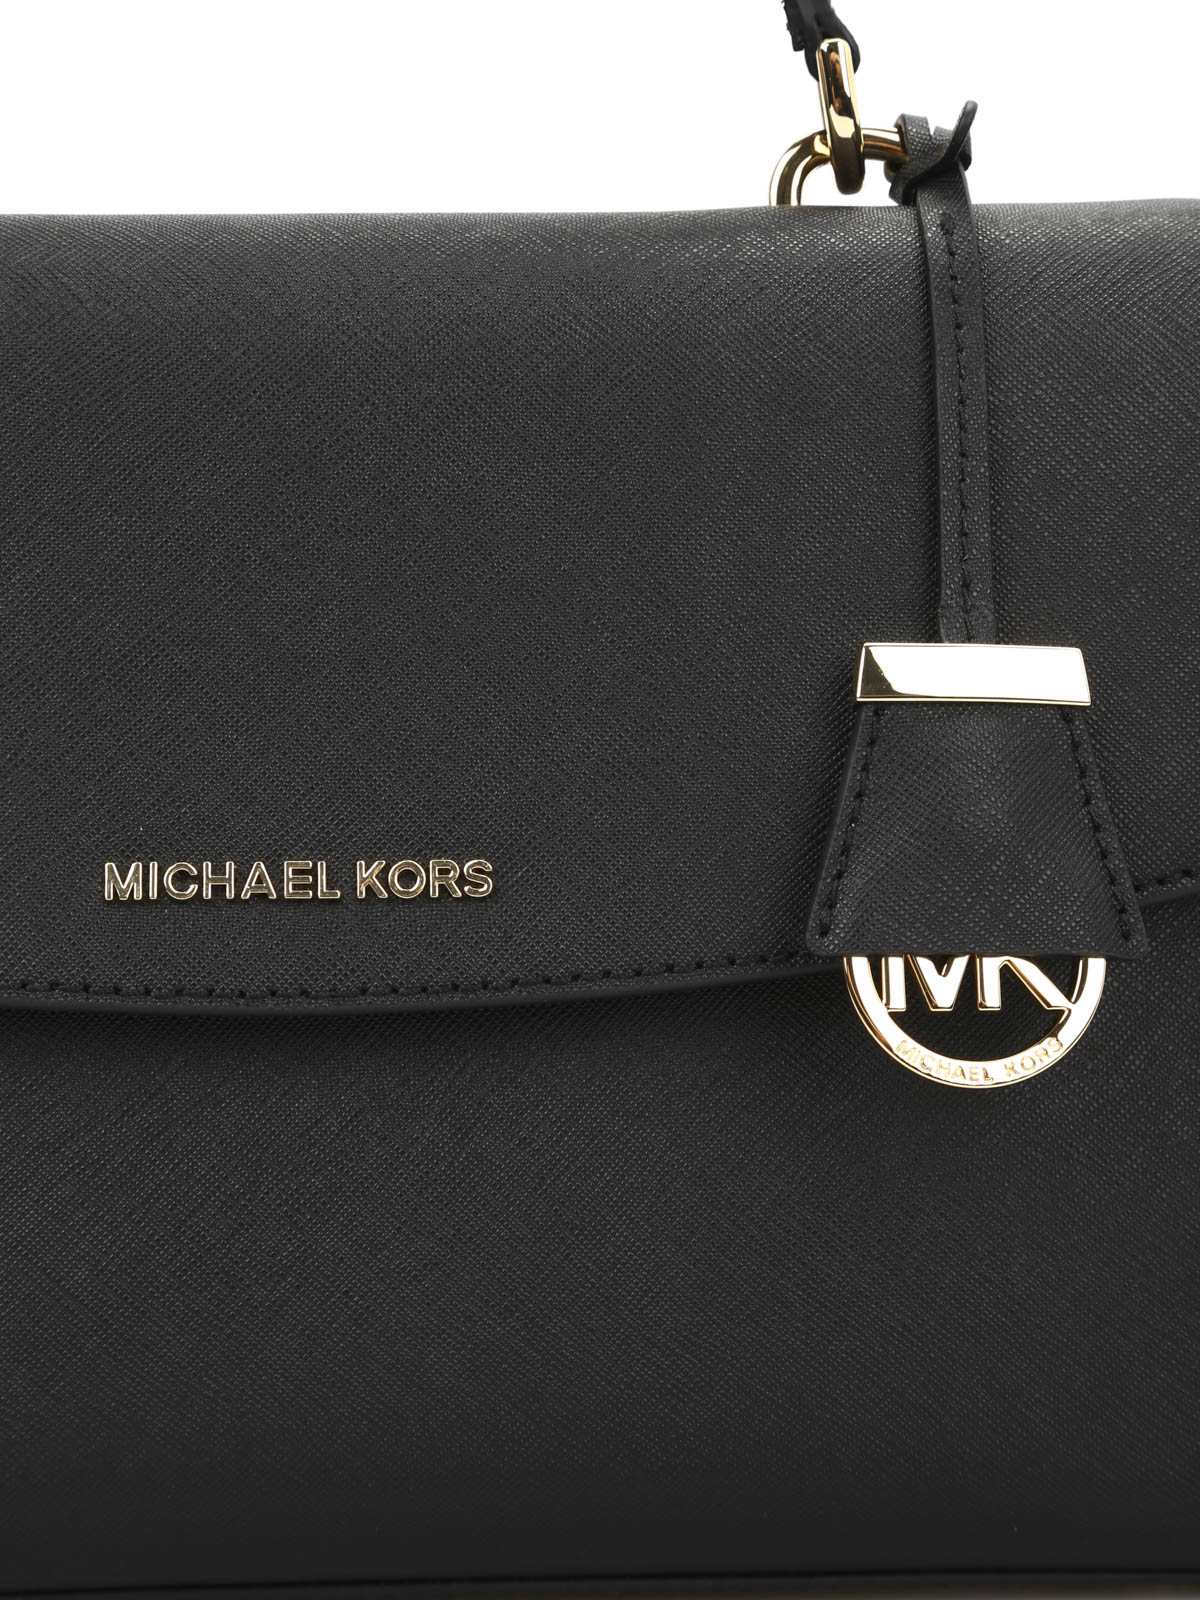 Michael kors Ava Medium handbag